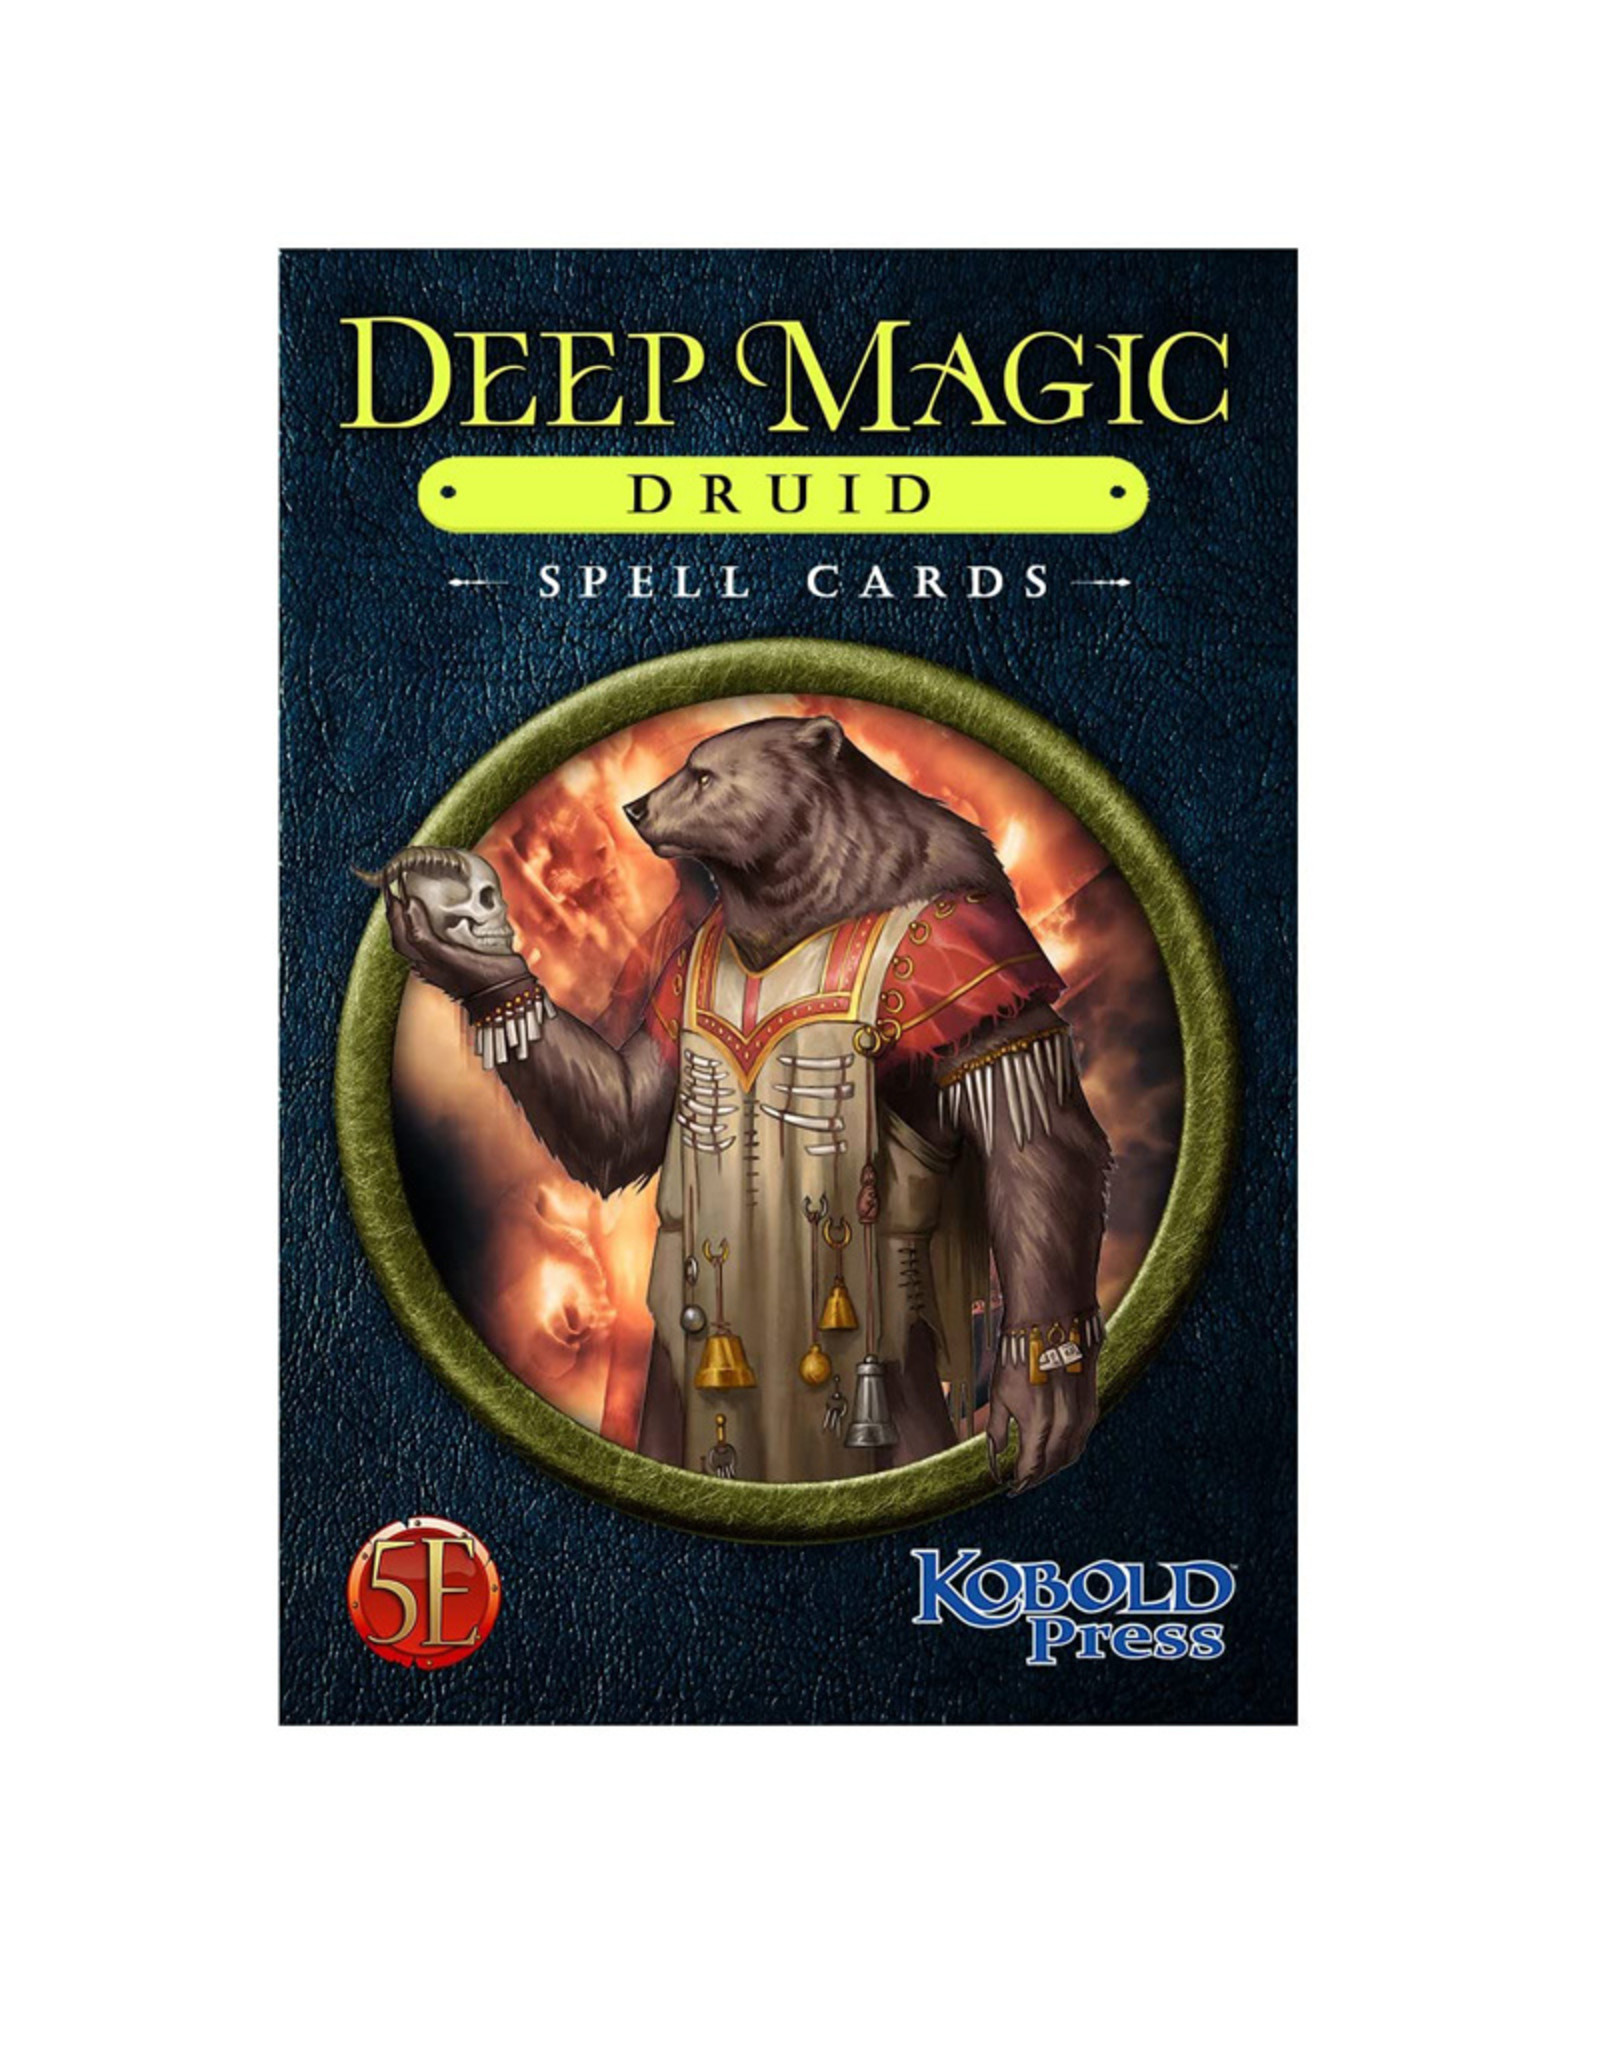 Kobold Press D&D Deep Magic Spells Cards: Druids